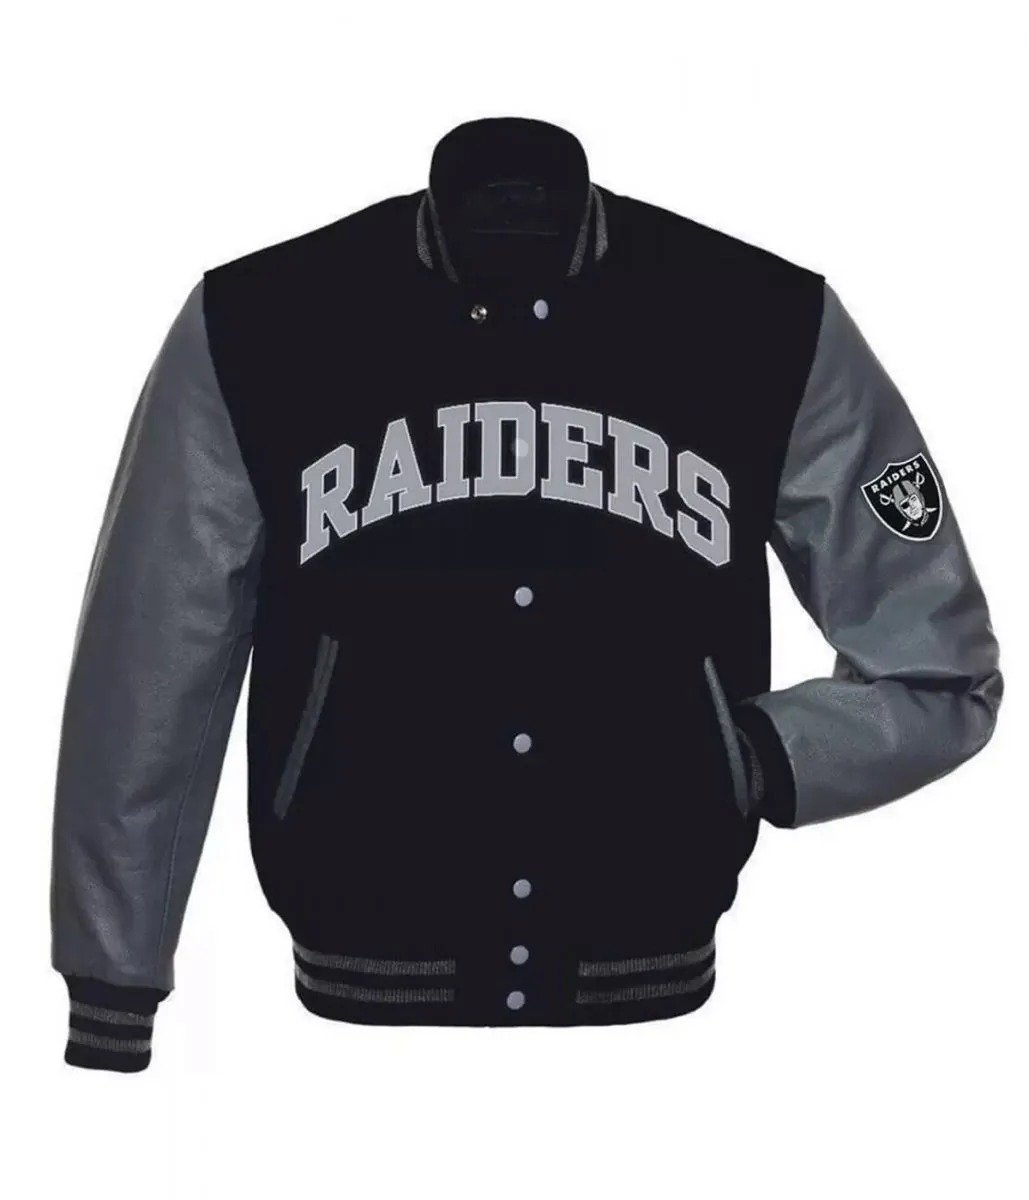 Las Vegas Raiders Letterman Jacket